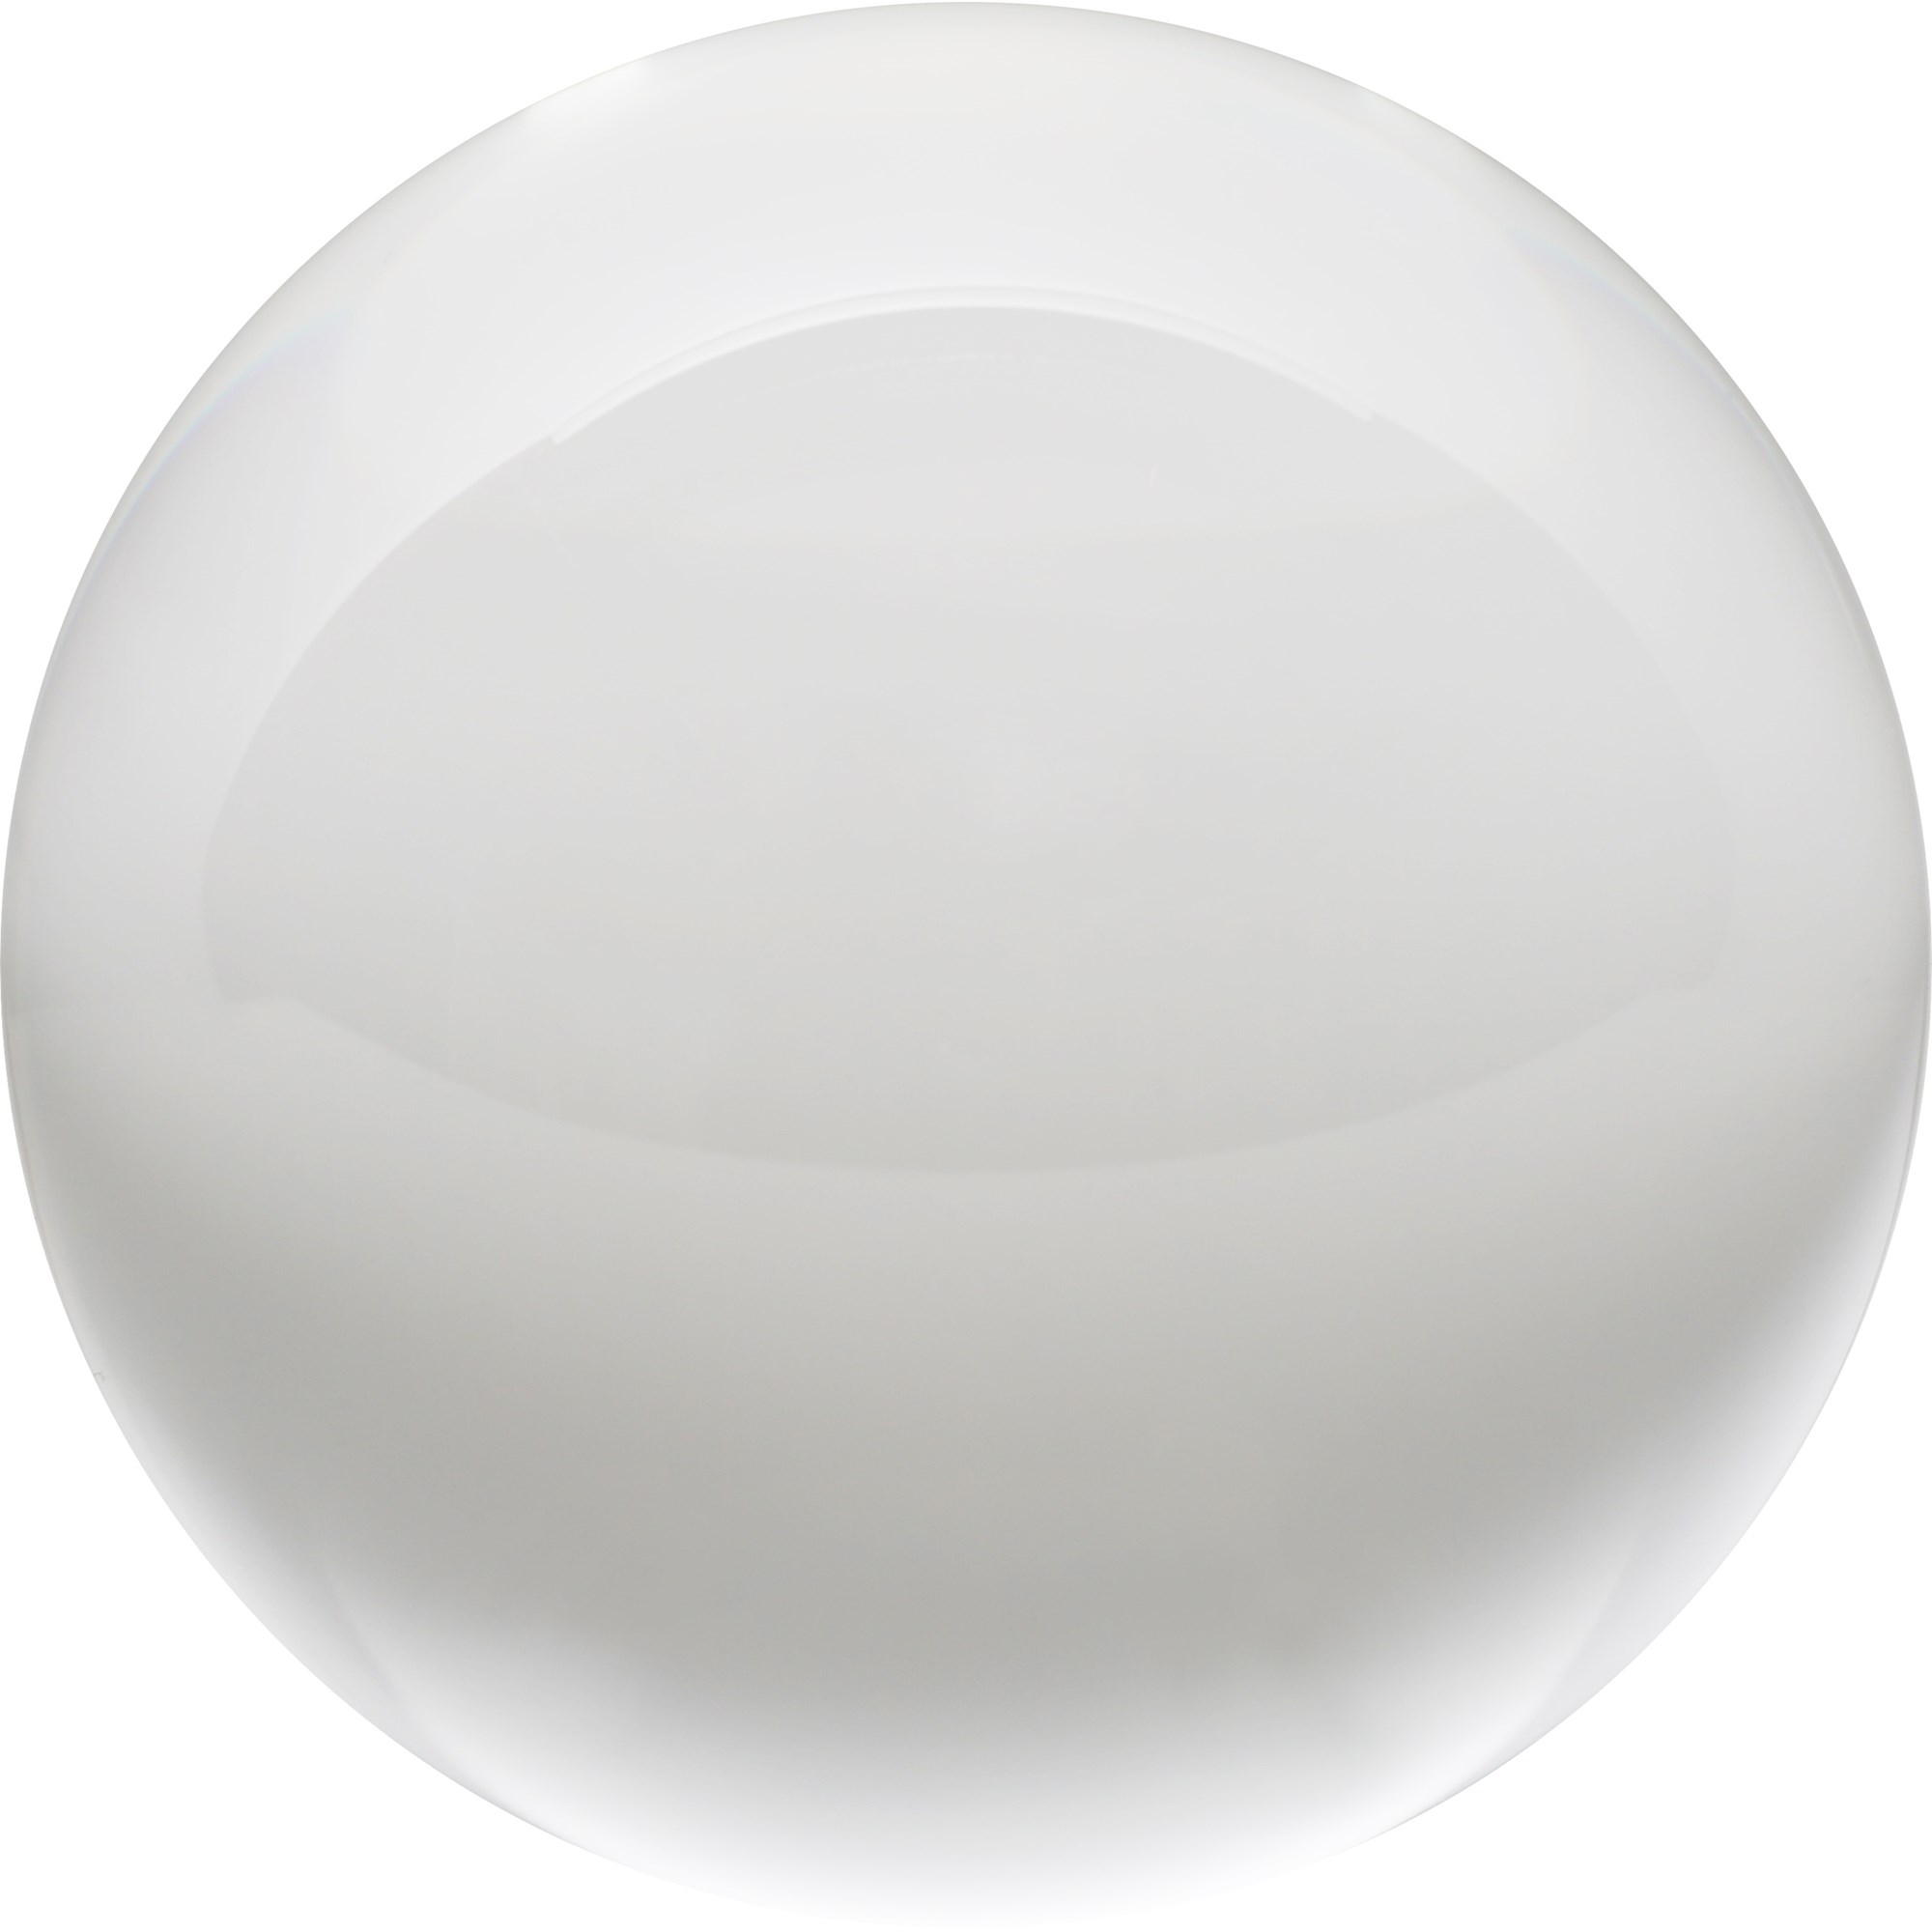 Rollei Lens Ball - photo glass ball